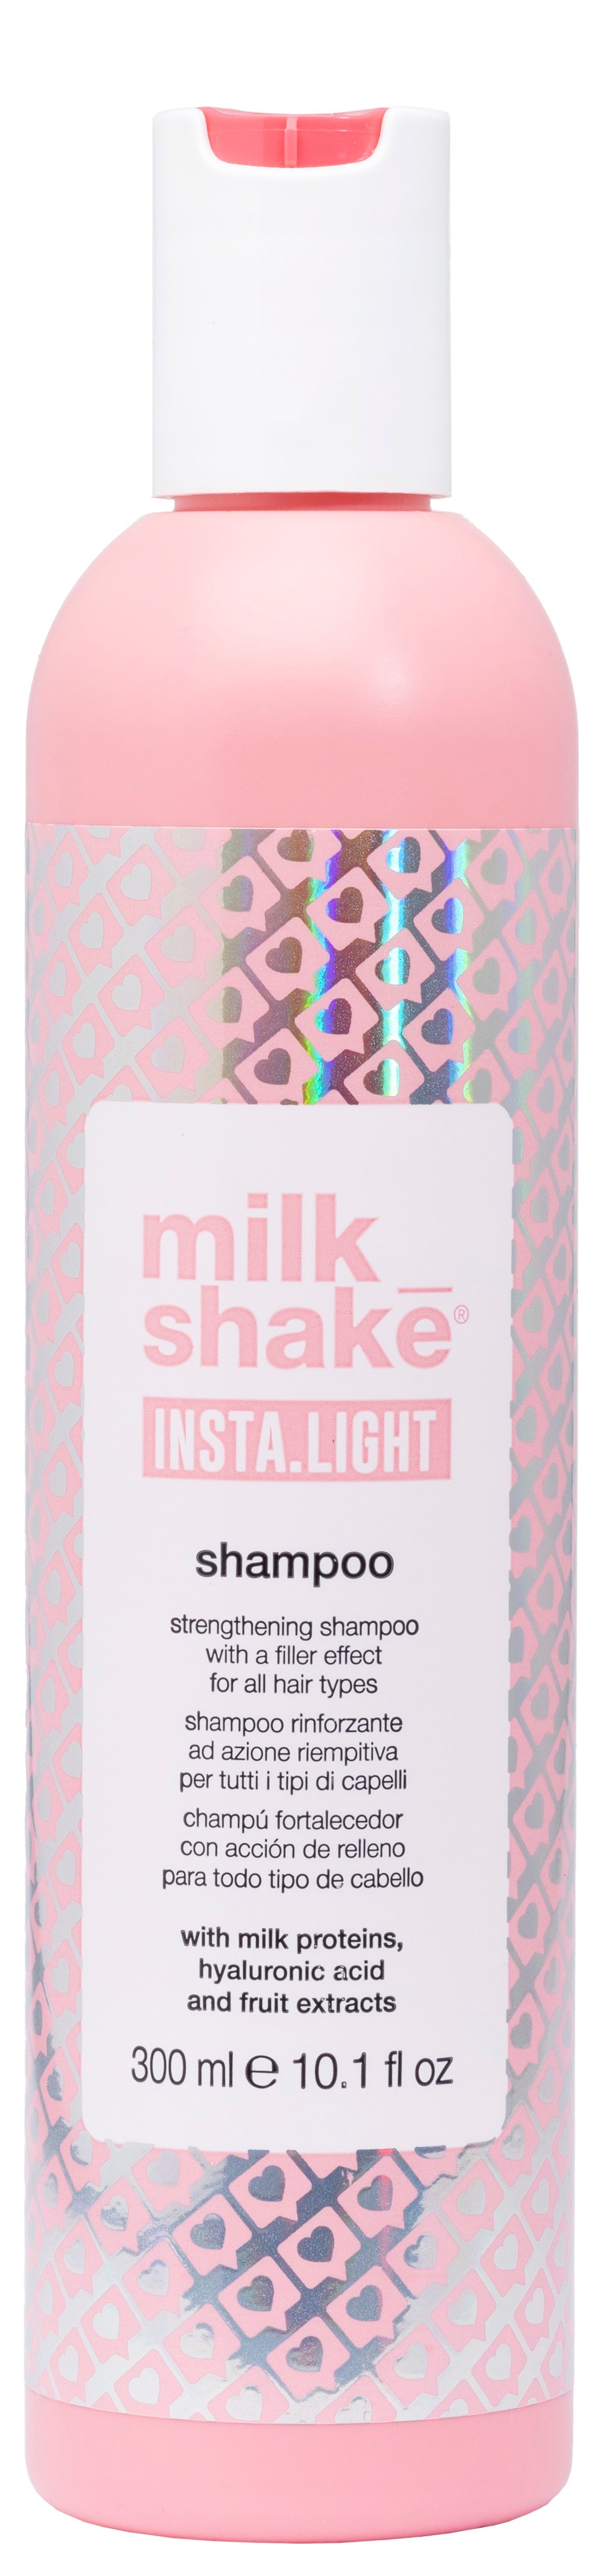 milk_shake - Insta.Light Shampoo 300 ml - Skjønnhet